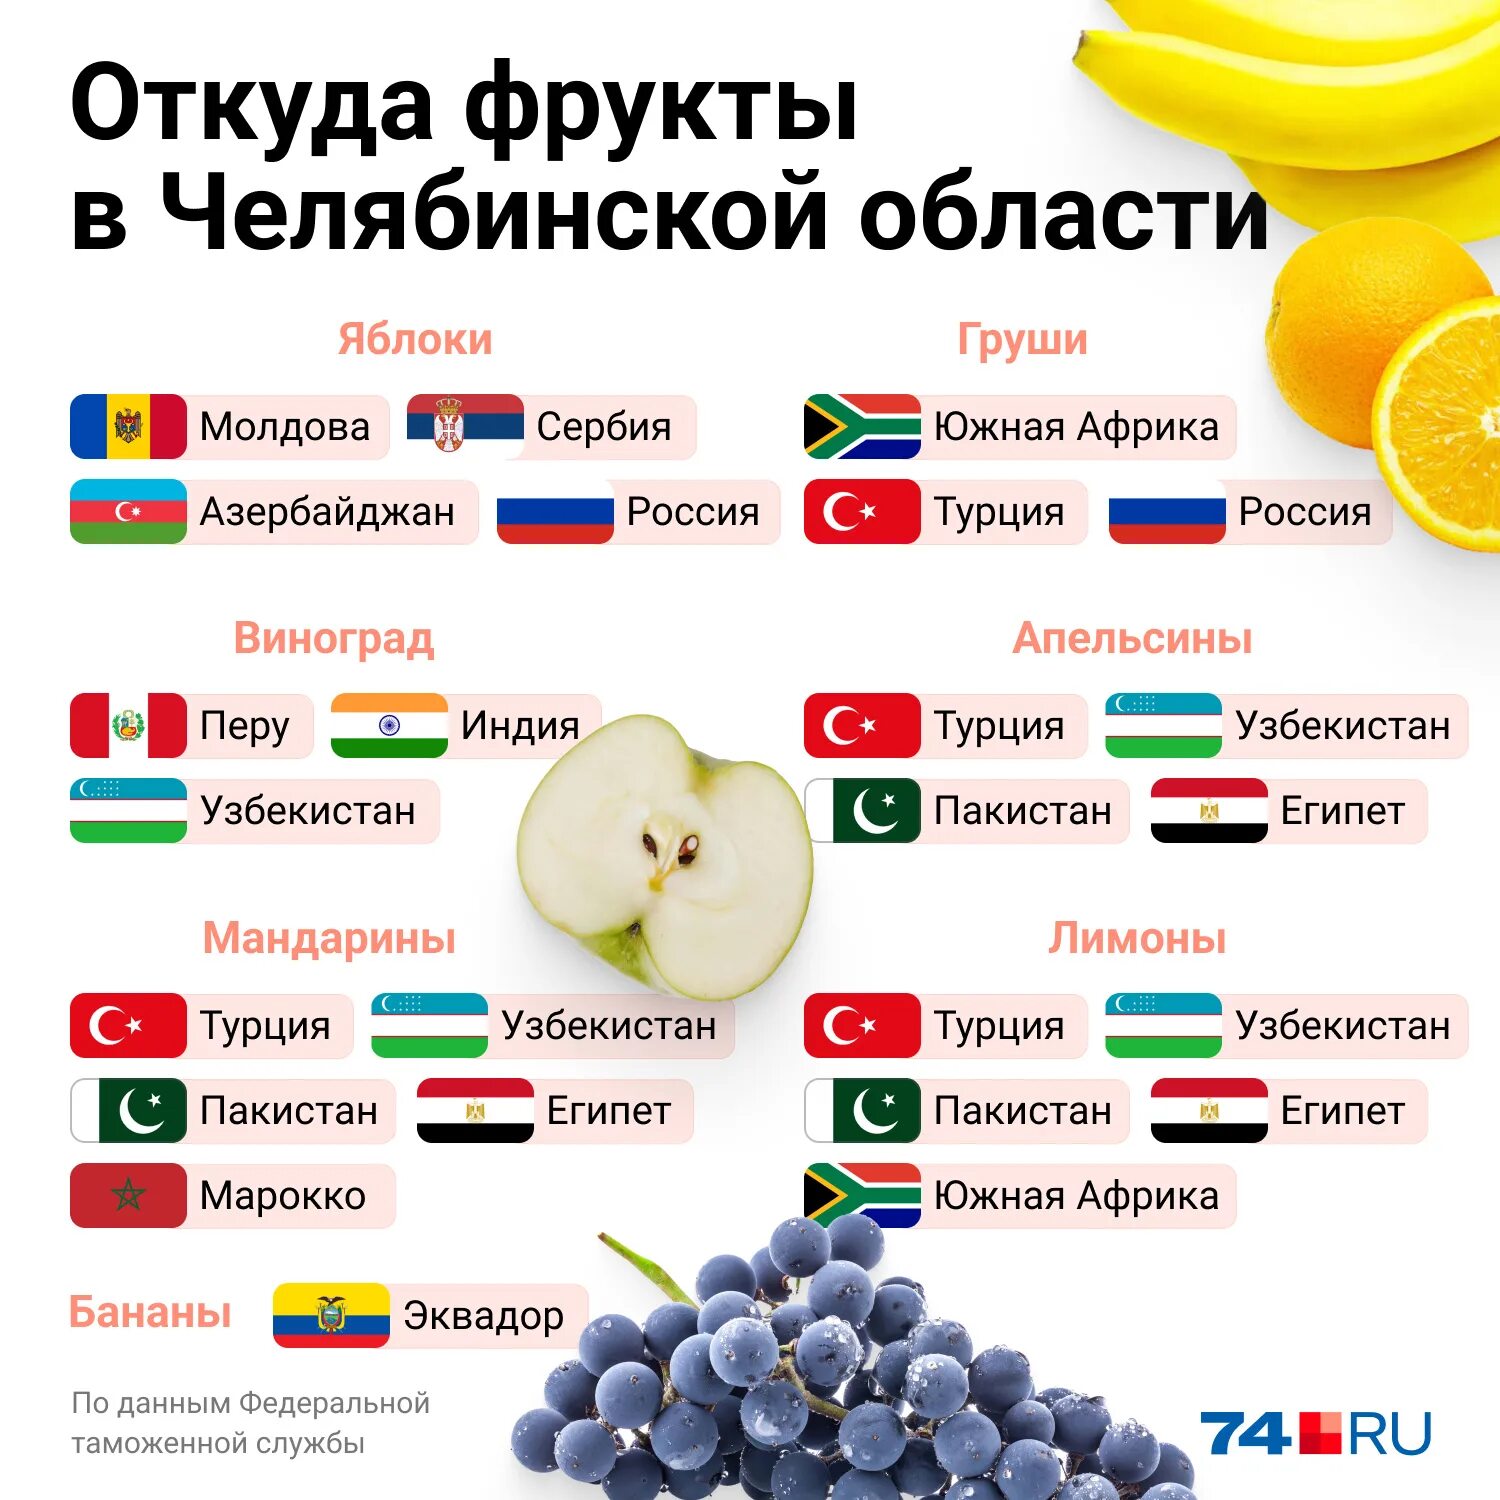 Откуда повезут бананы в россию. Откуда привозят апельсины в Россию. Откуда везут бананы. Откуда привозят овощи. Откуда привозят бананы.